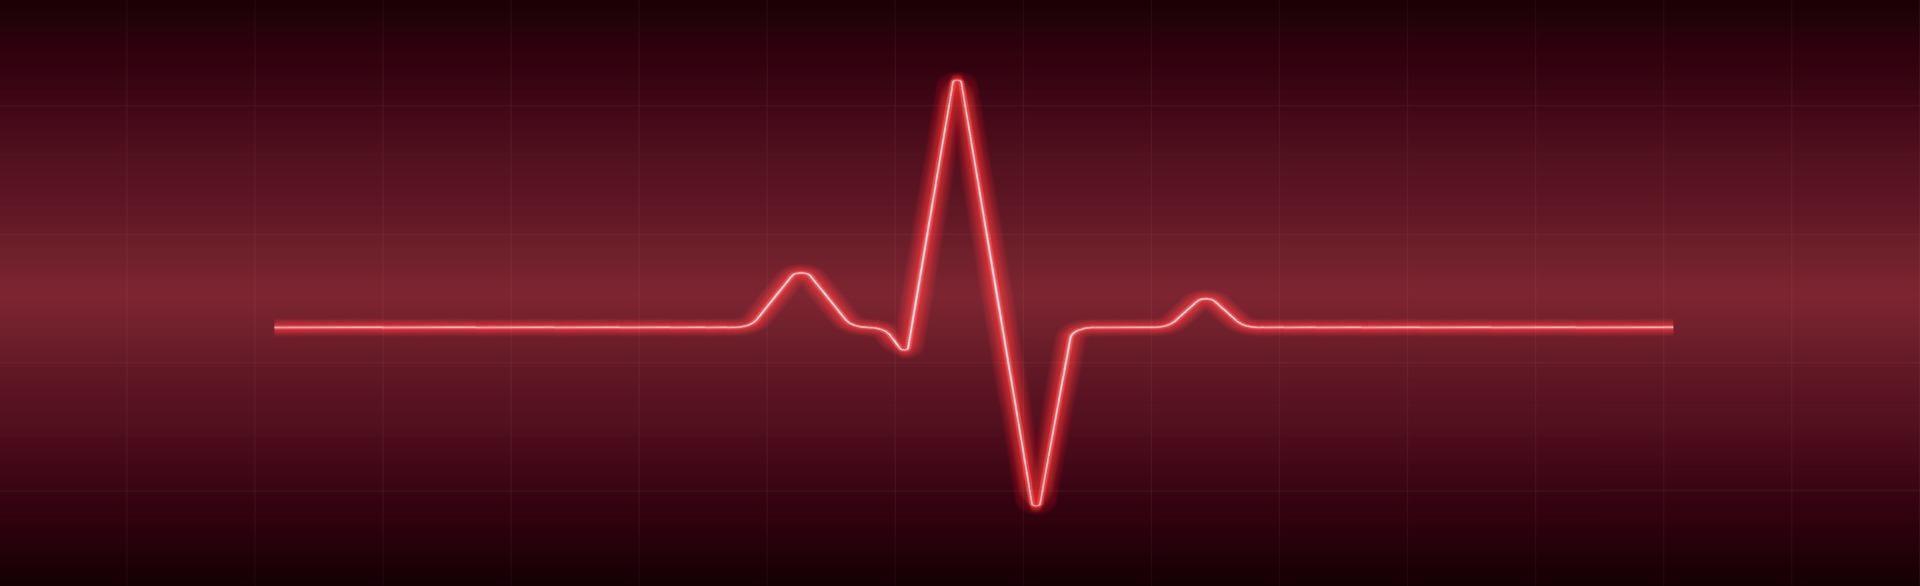 hjärtpuls - böjd röd linje på en röd-svart bakgrund vektor